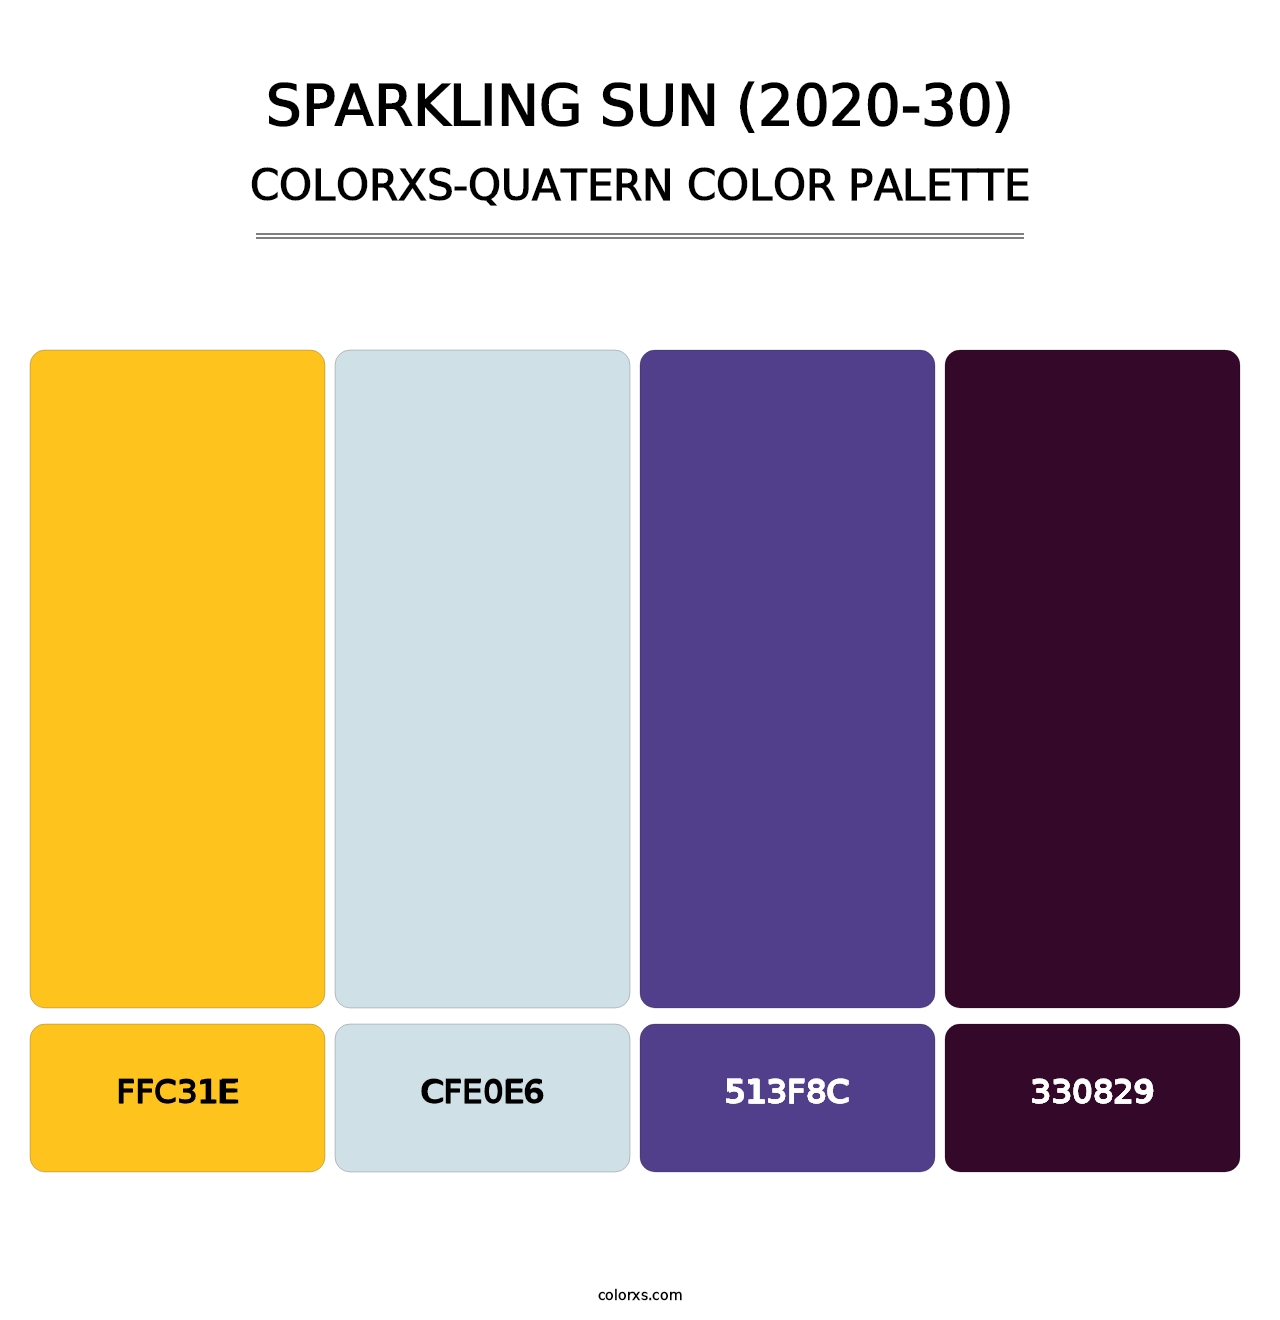 Sparkling Sun (2020-30) - Colorxs Quatern Palette